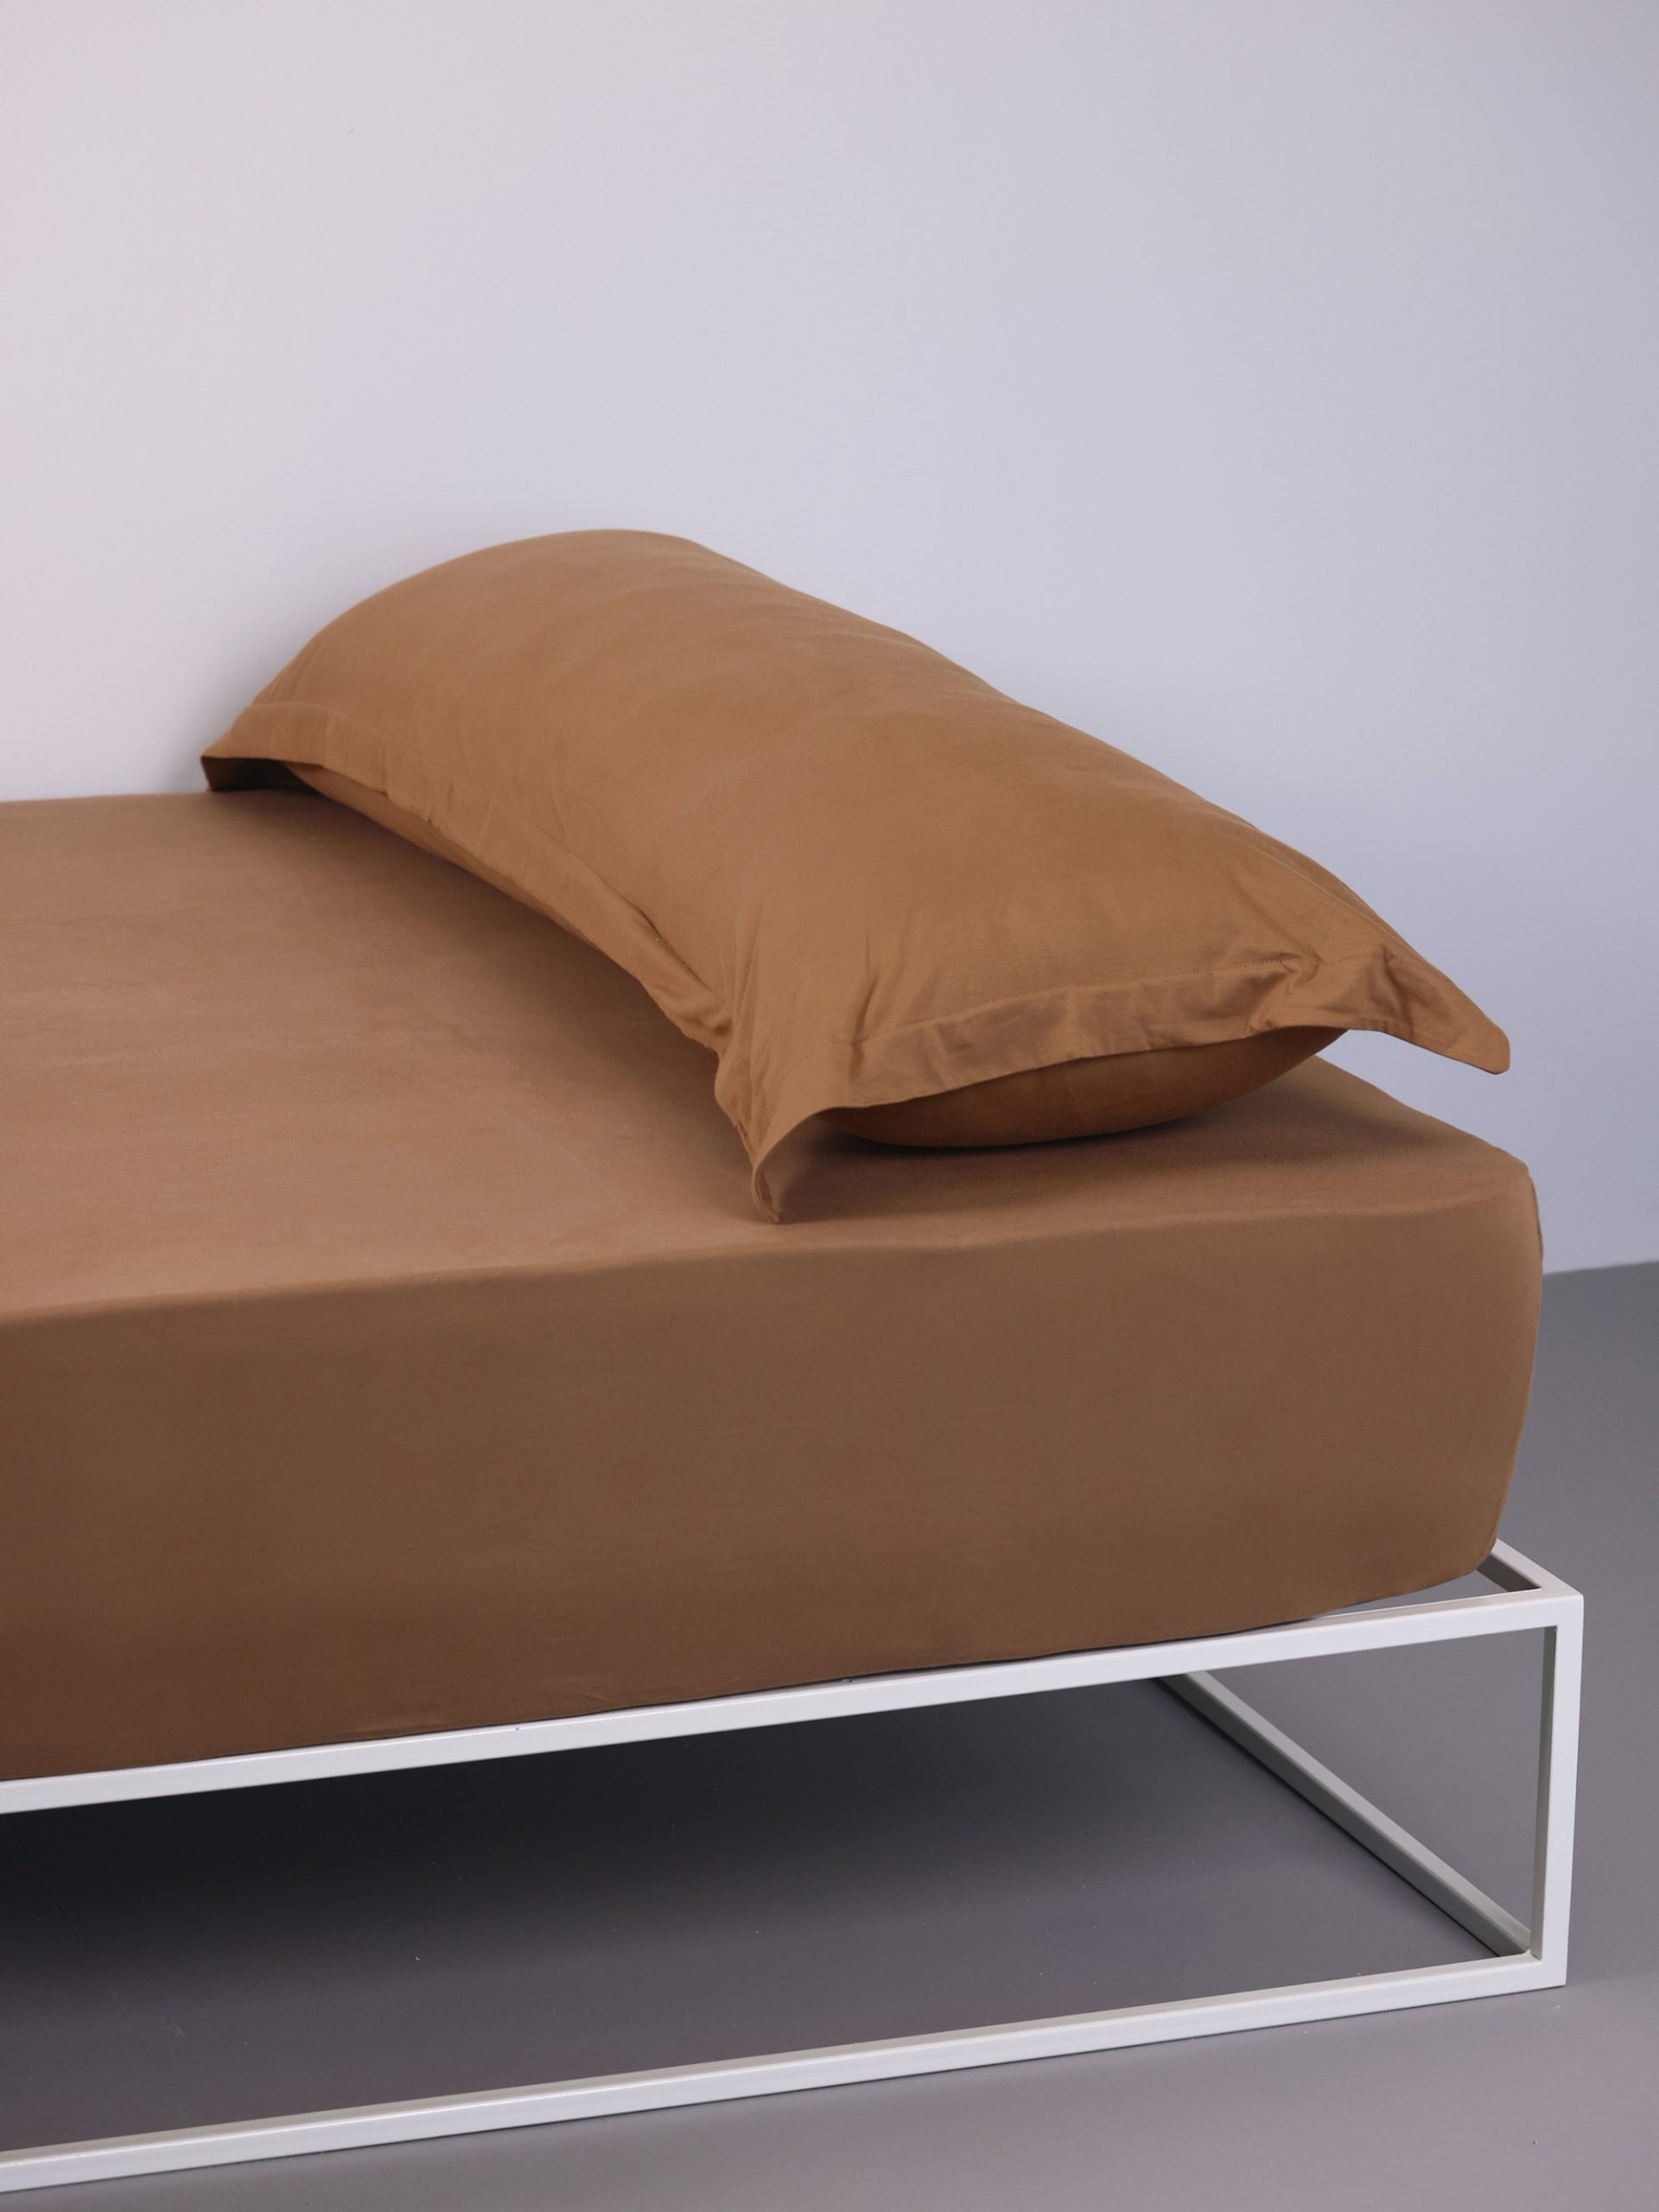 ראש מיטת ברזל לבנה עם סדין, כרית וציפית לכרית ארוכה בצבע טופי בחדר עם קירות אפורים